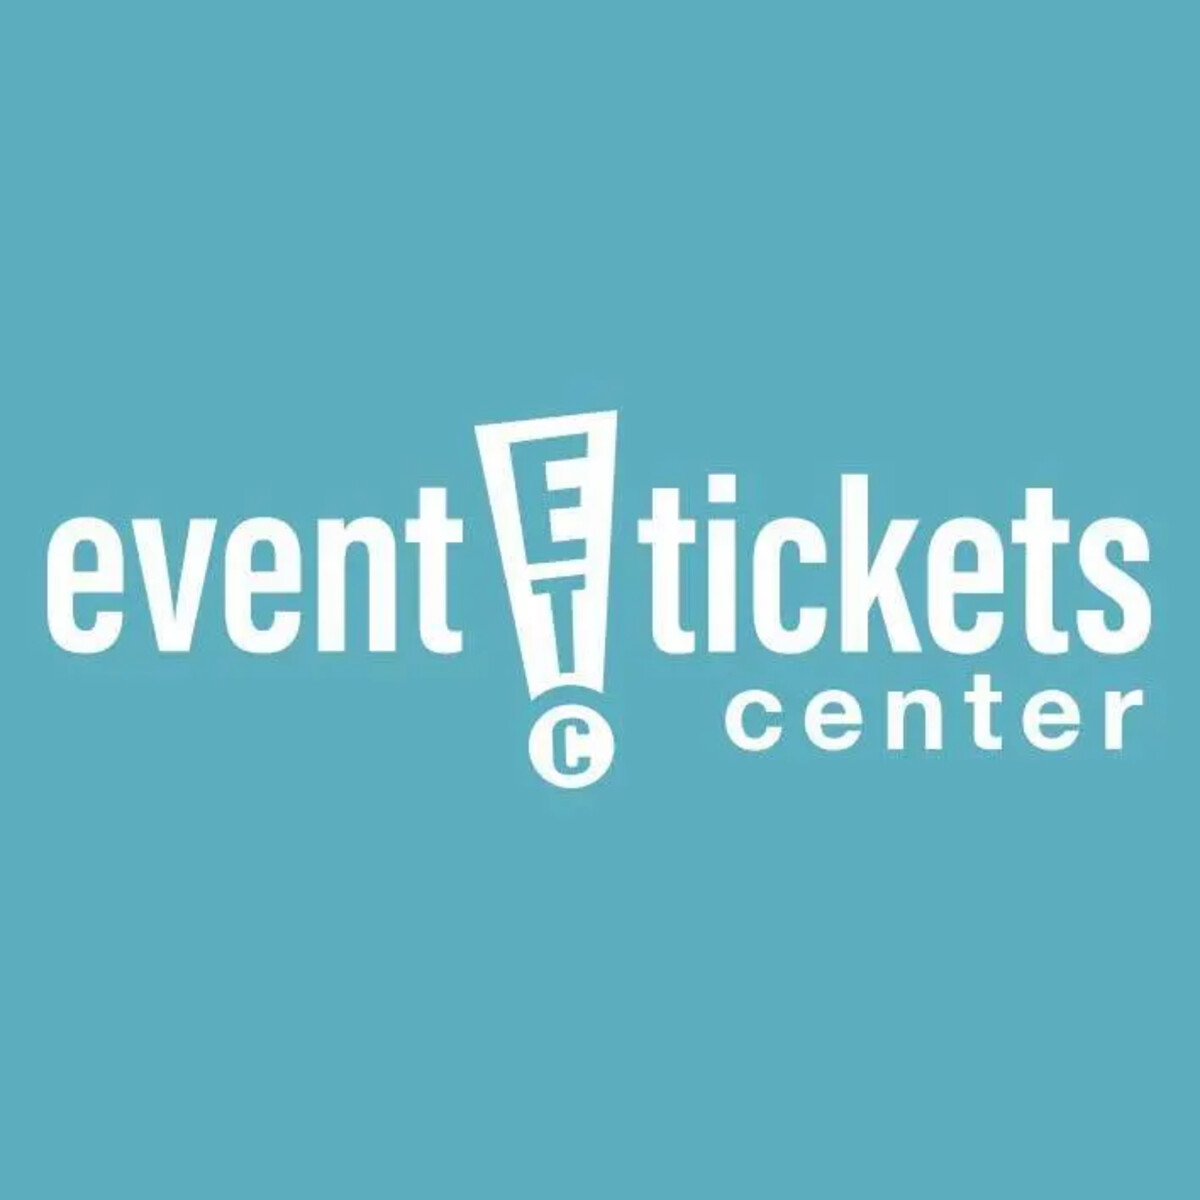 Top 10 Best Concert Ticket Sites